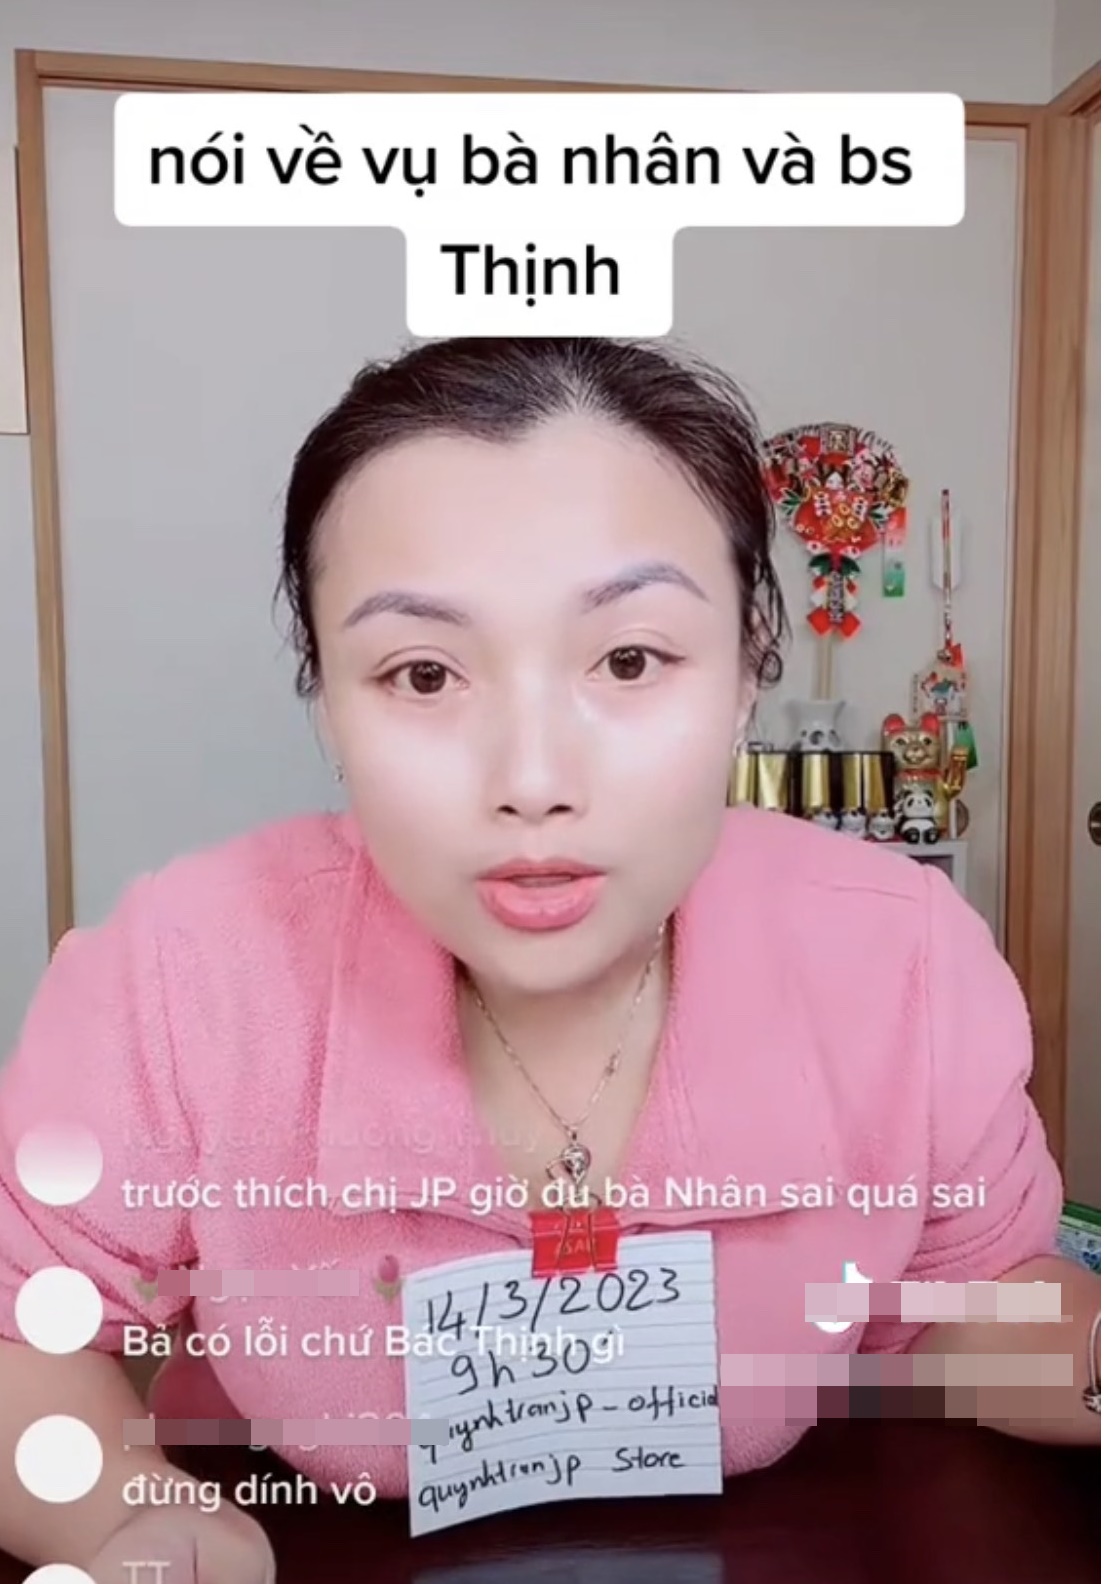 Quỳnh Trần JP tuyên bố bác sĩ Thịnh sai, khẳng định không bênh bà Nhân Vlog, hé lộ 1 bí mật đằng sau - ảnh 3